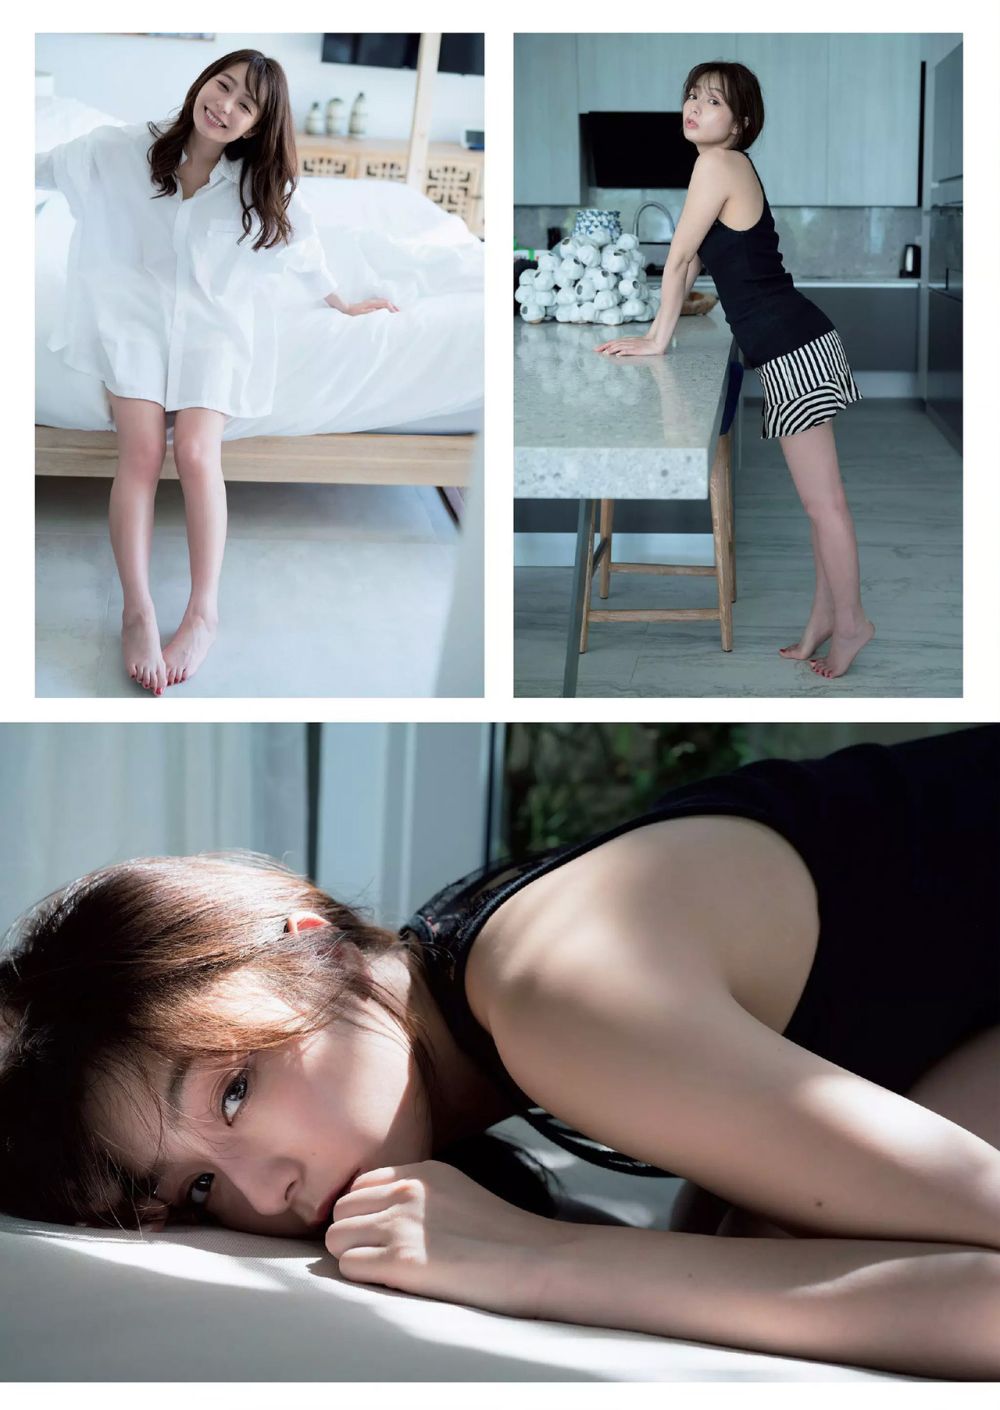 宇垣美里 Sexy and Hottest Photos , Latest Pics